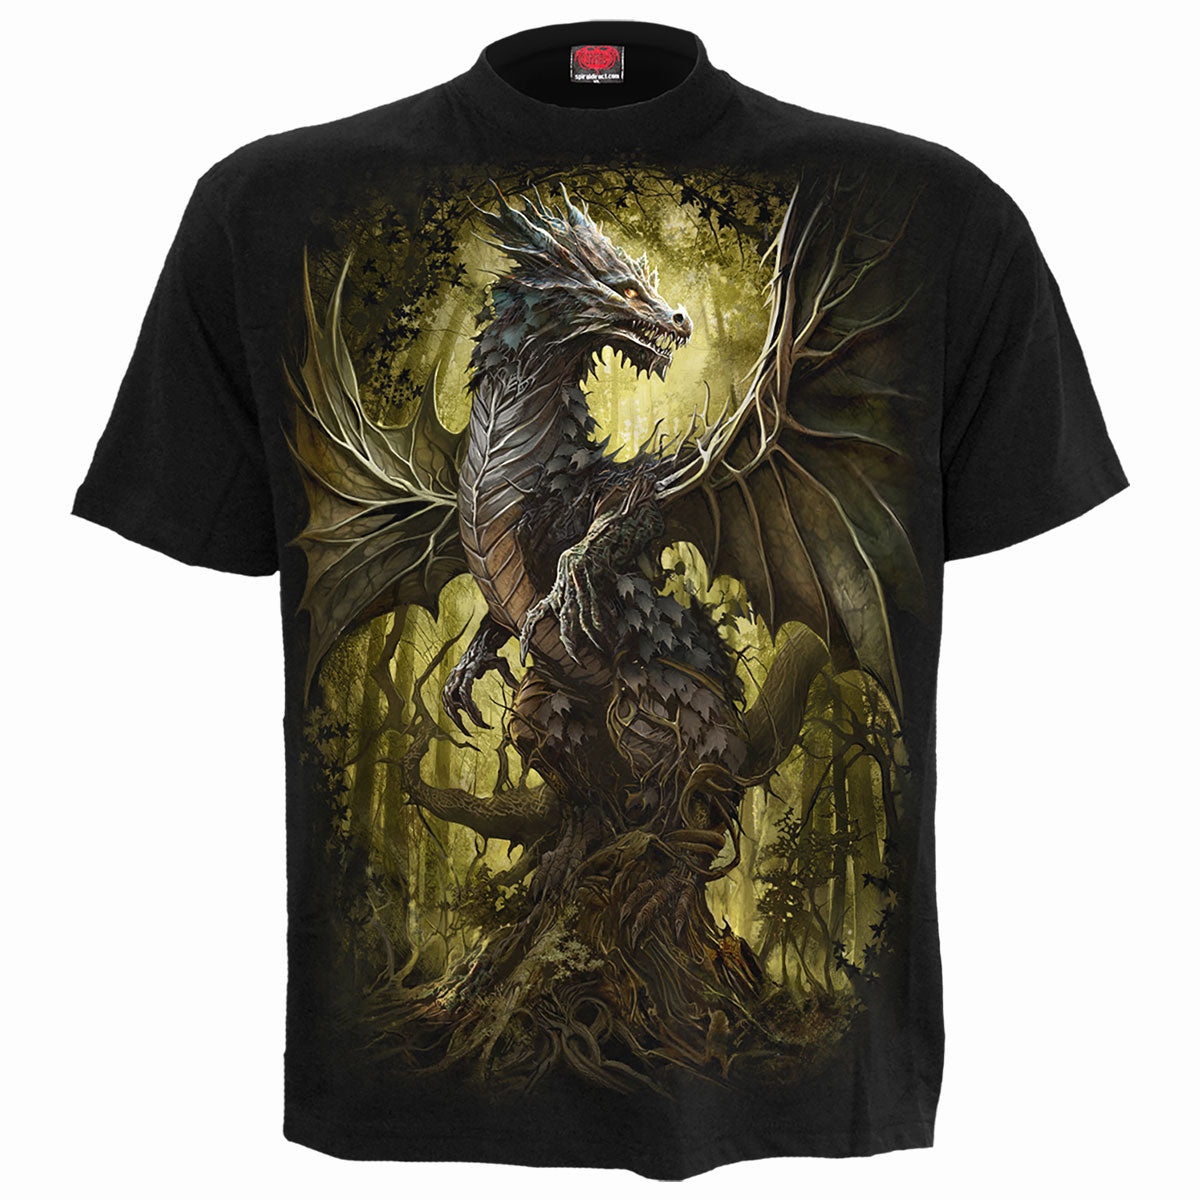 OAK DRAGON - T-Shirt Black